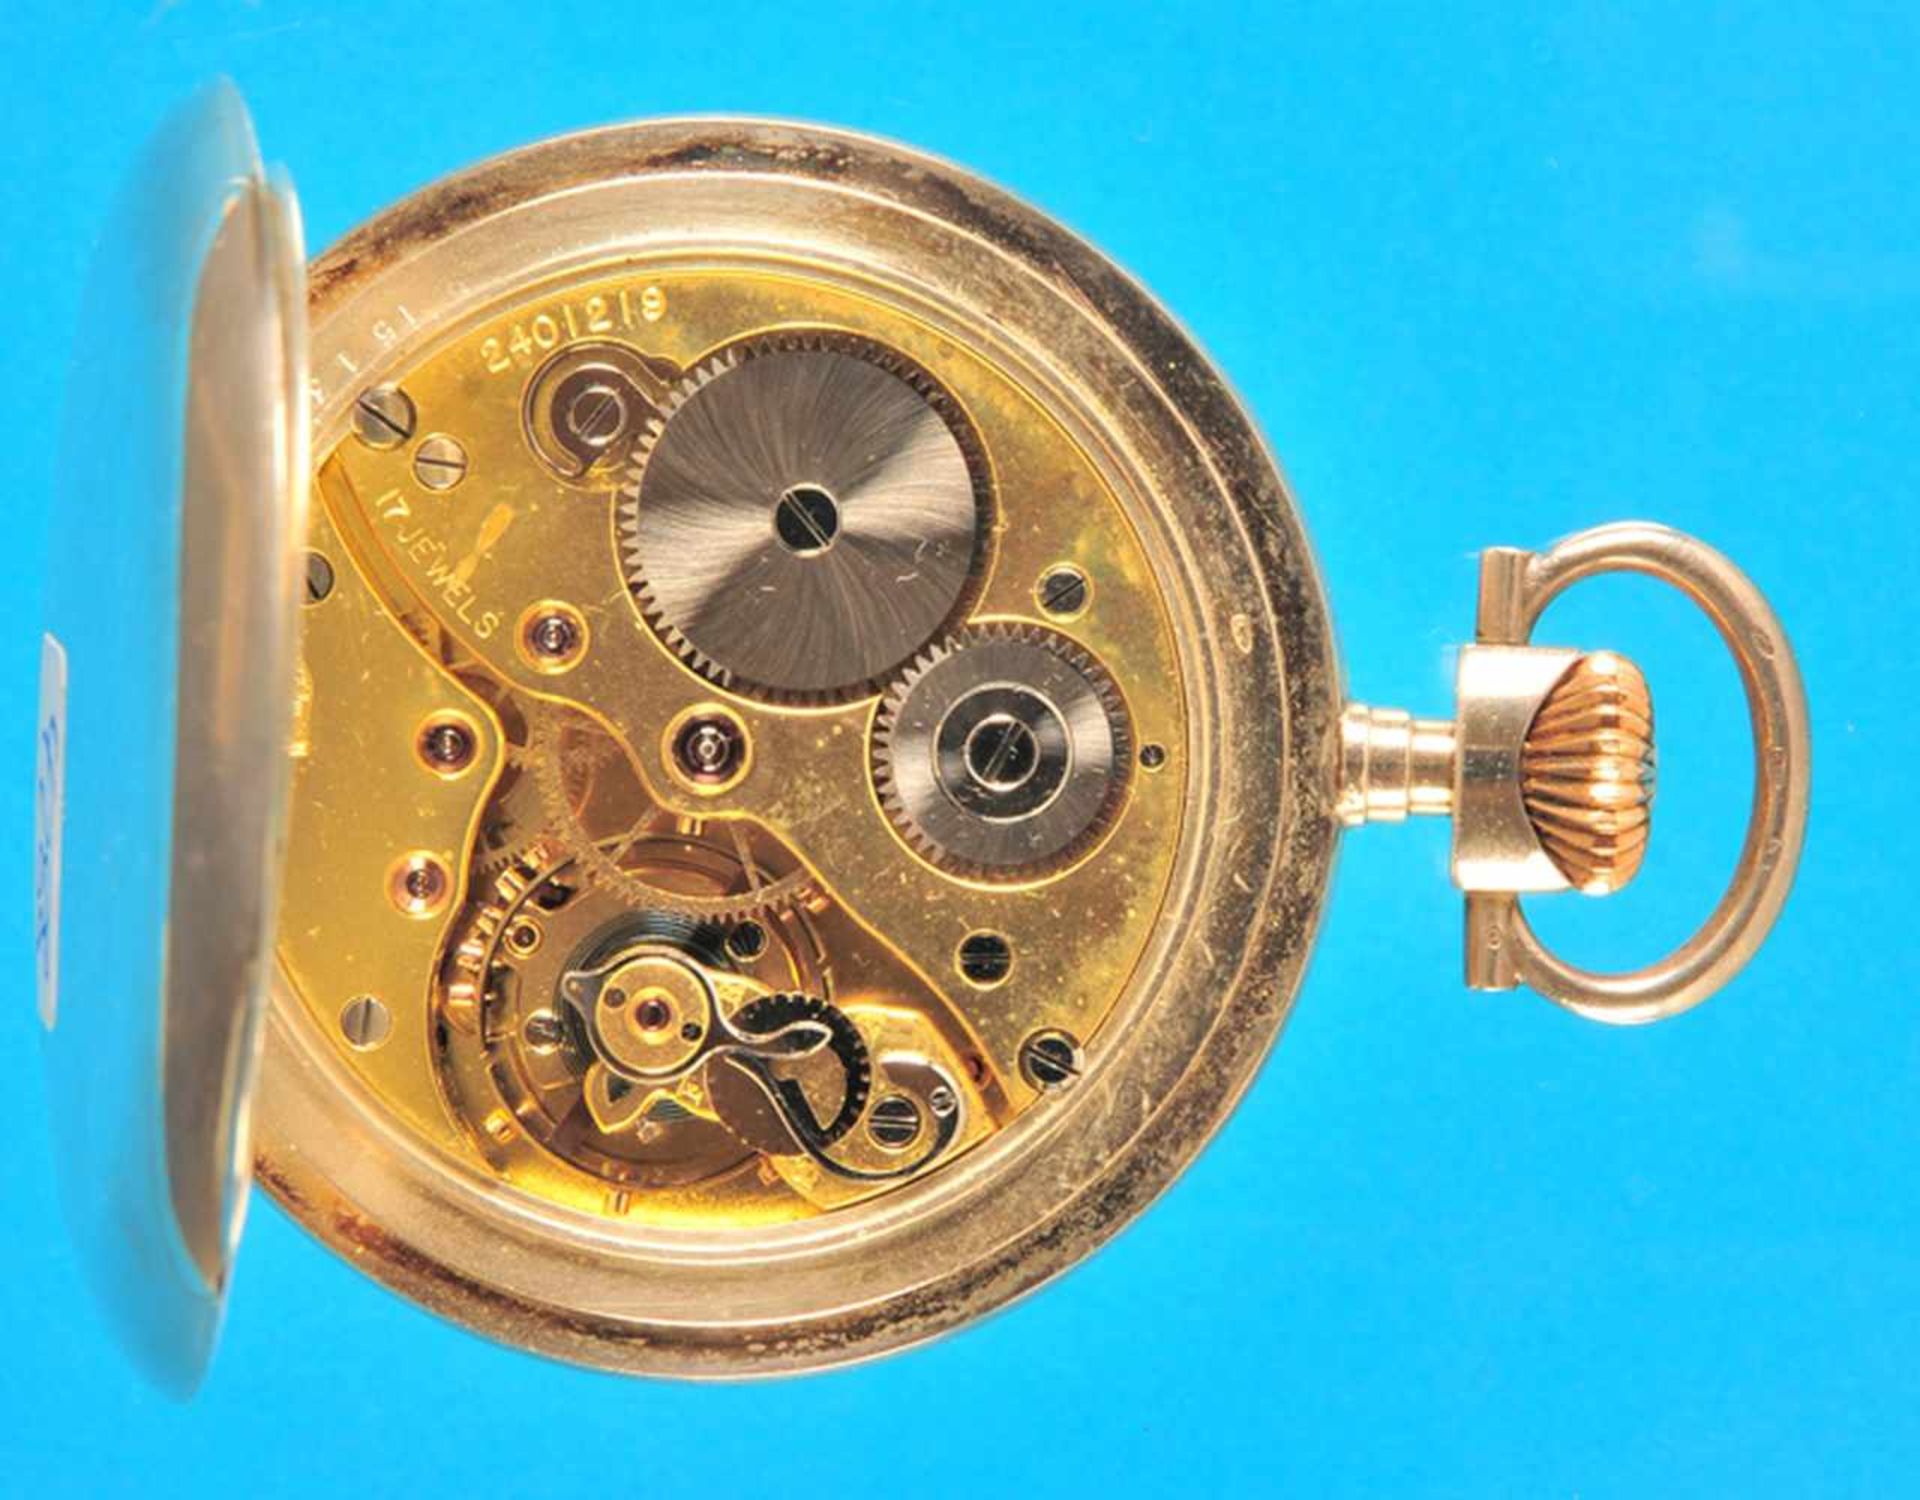 Saxonia Silbertaschenuhr, glattes Gehäuse, Emailzifferblatt mit arabischen Zahlen, kleine Sekunde, - Bild 2 aus 2